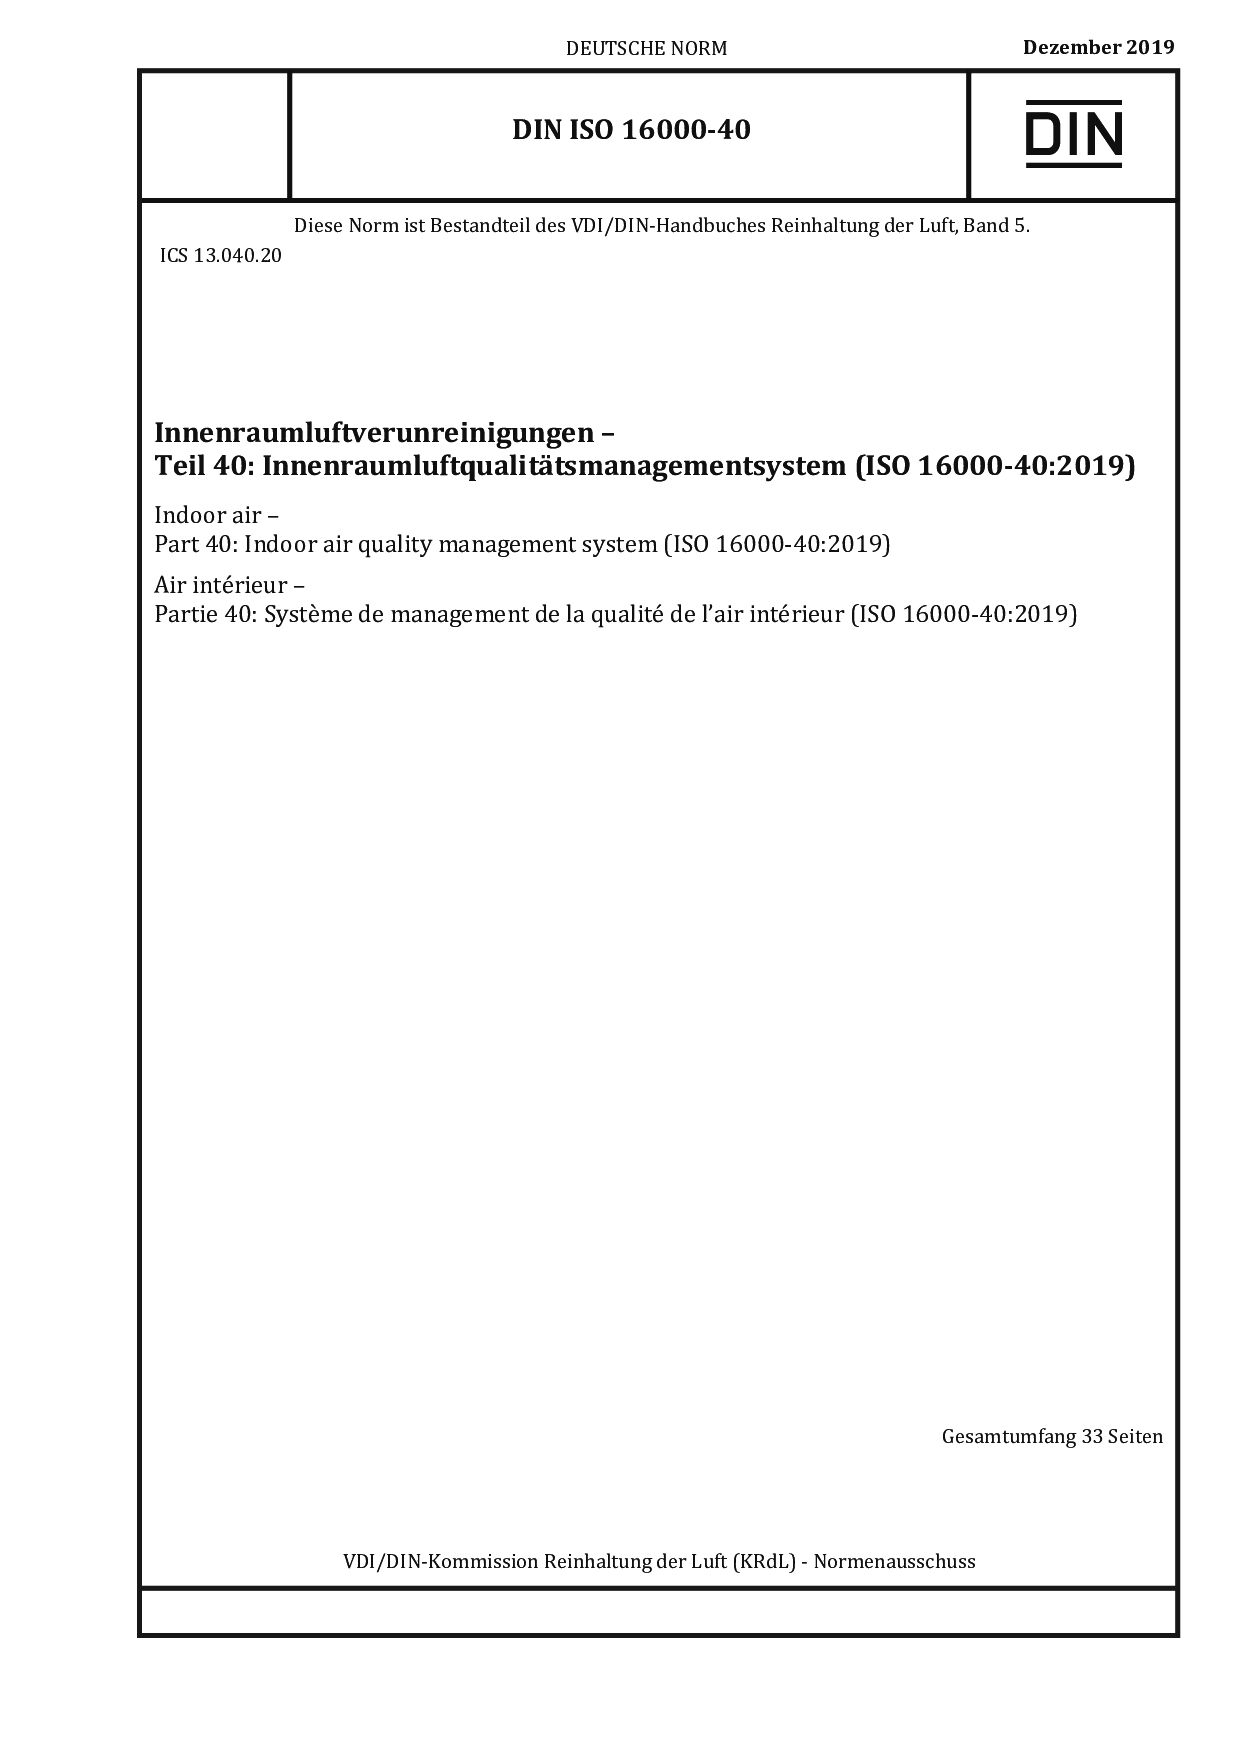 DIN ISO 16000-40:2019封面图